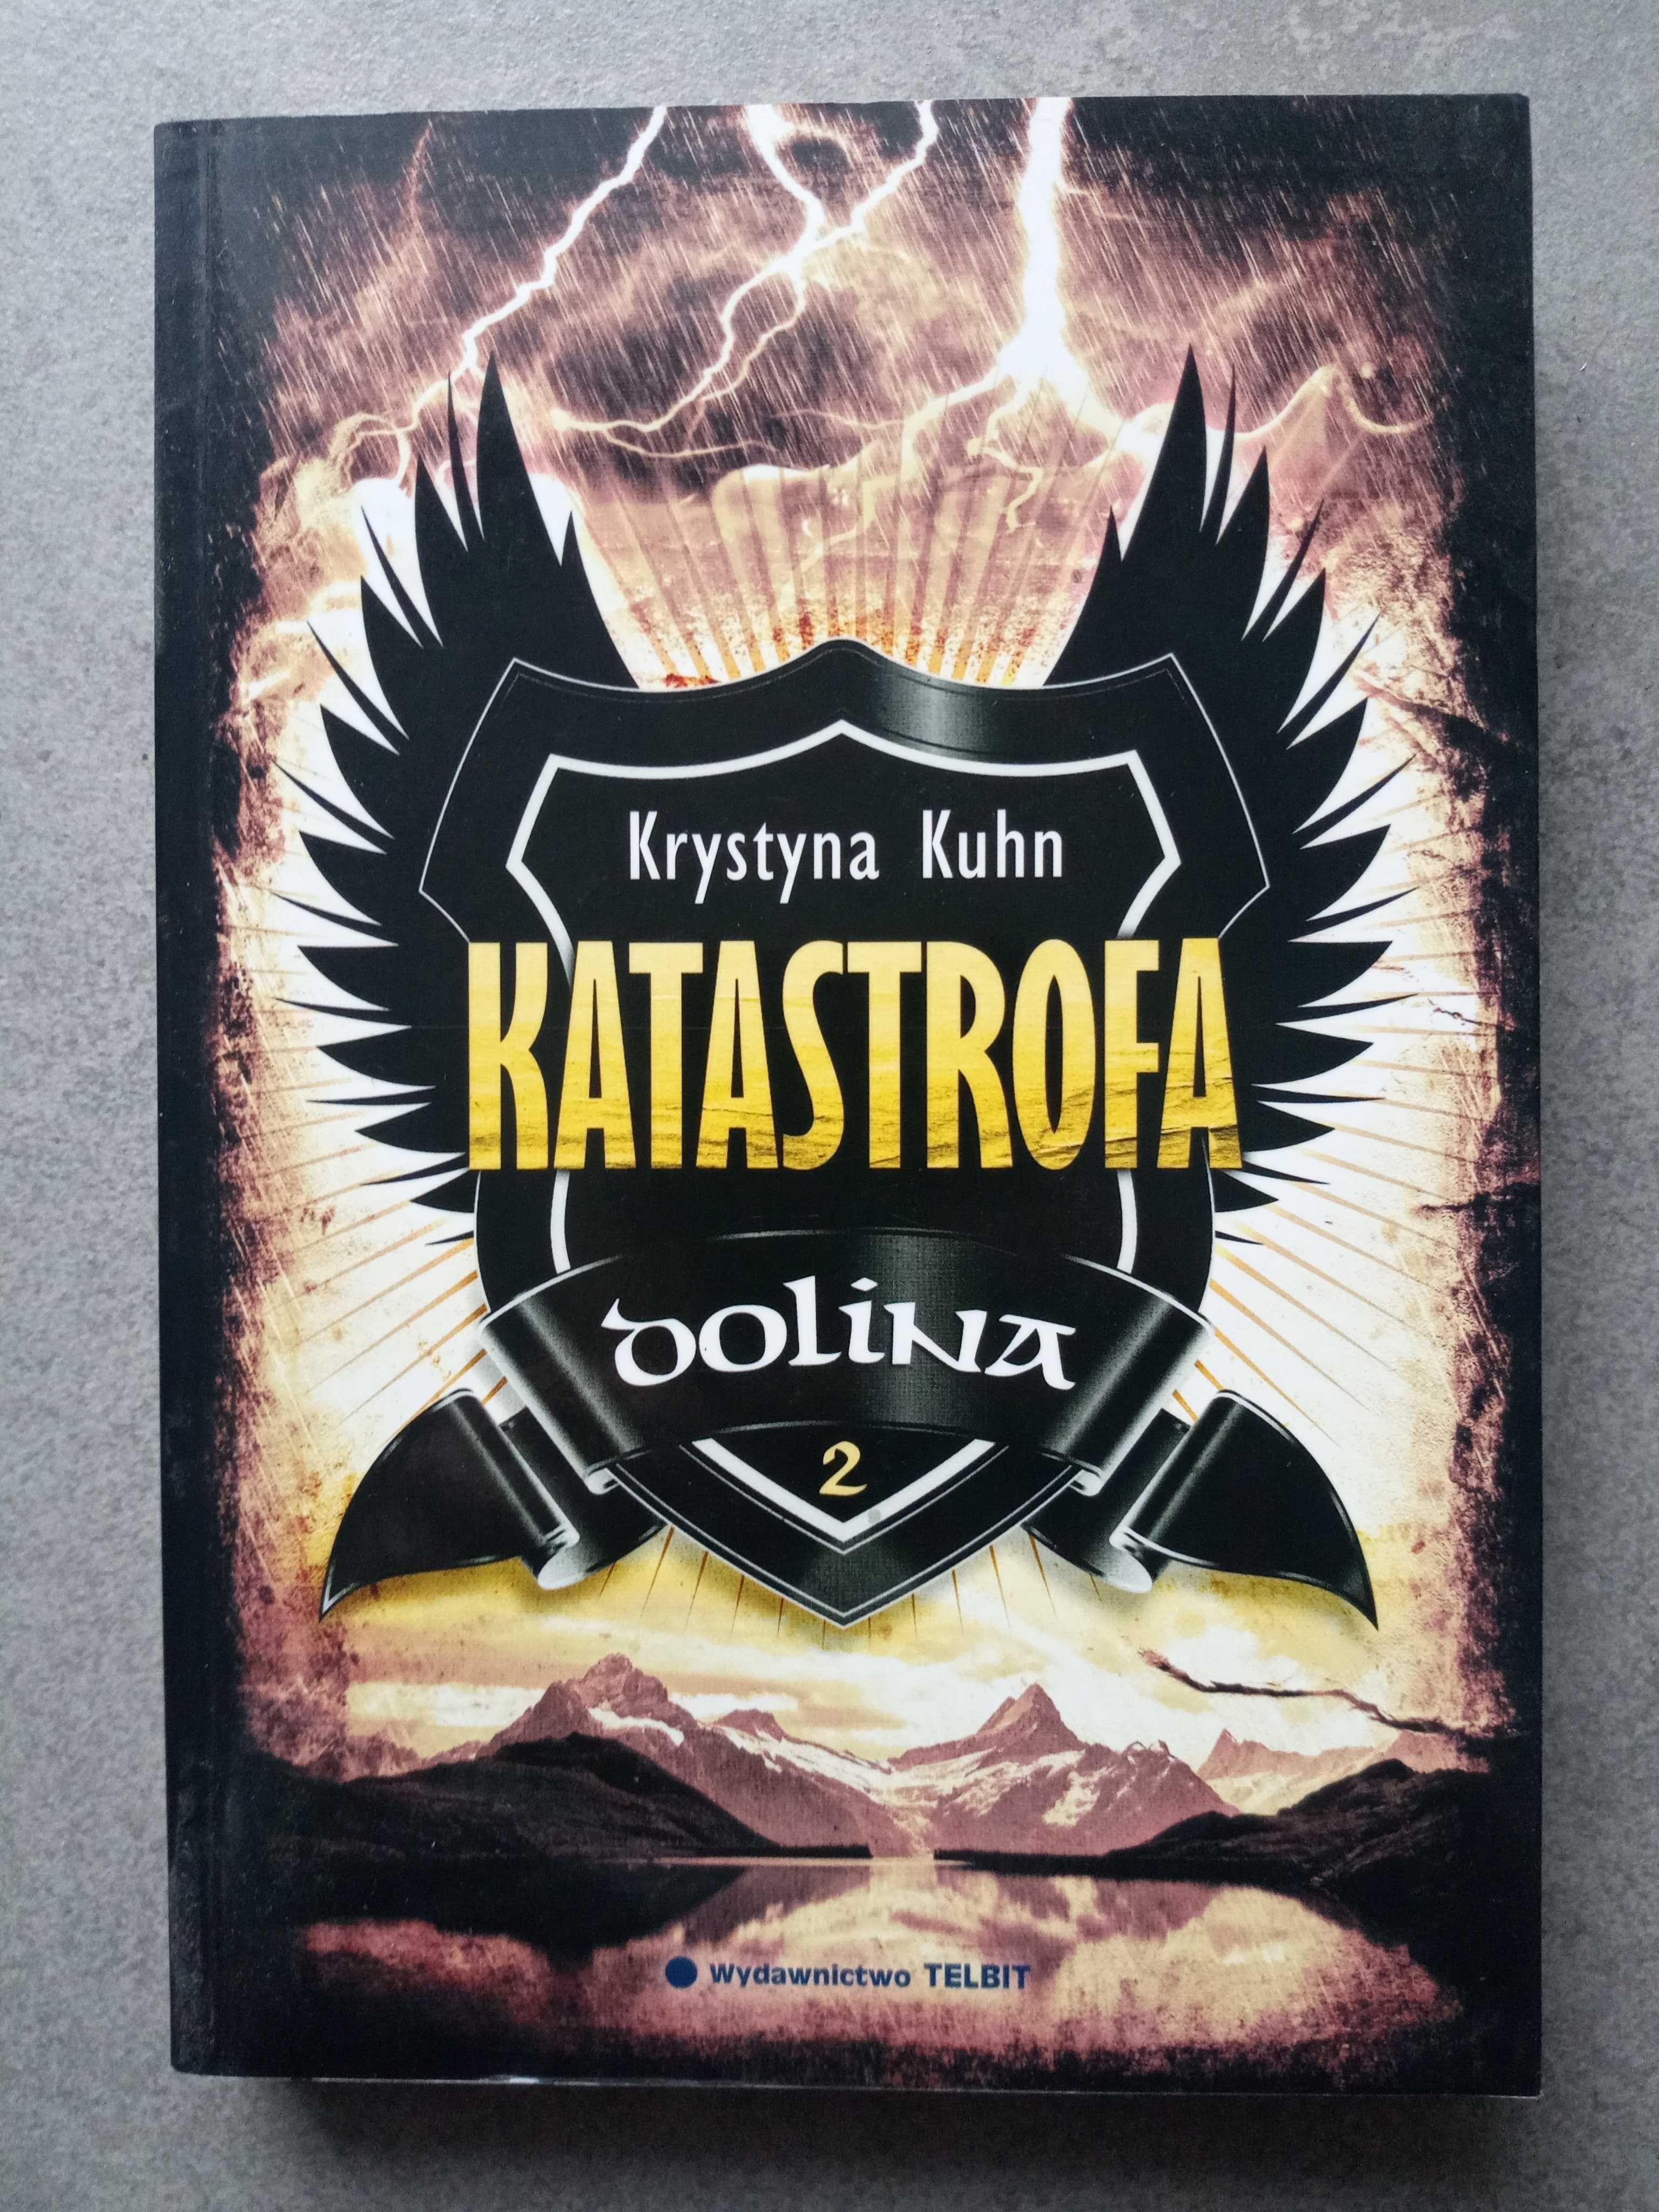 Książka Krystyna Kuhn - Katastrofa